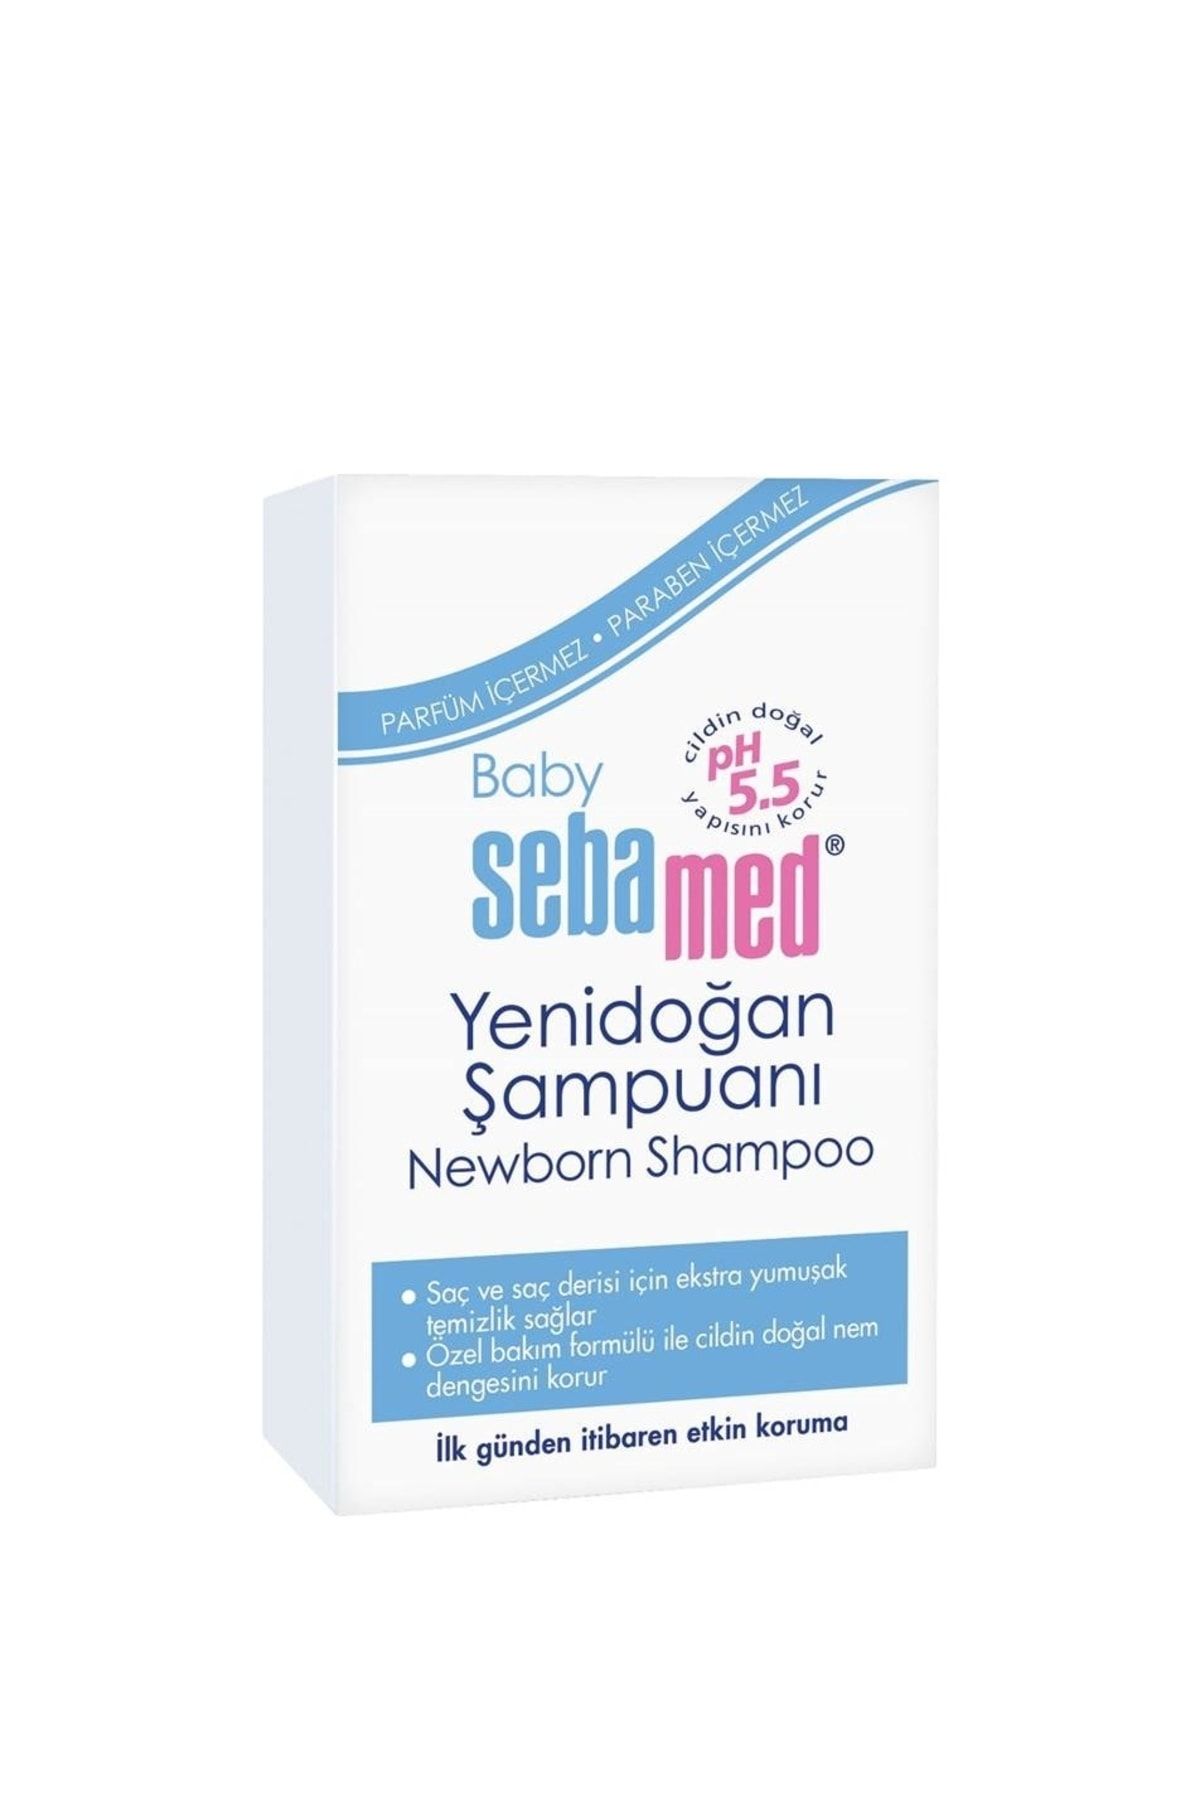 Sebamed Baby Yenidoğan Şampuanı 250ml (newborn Shampoo 250ml)